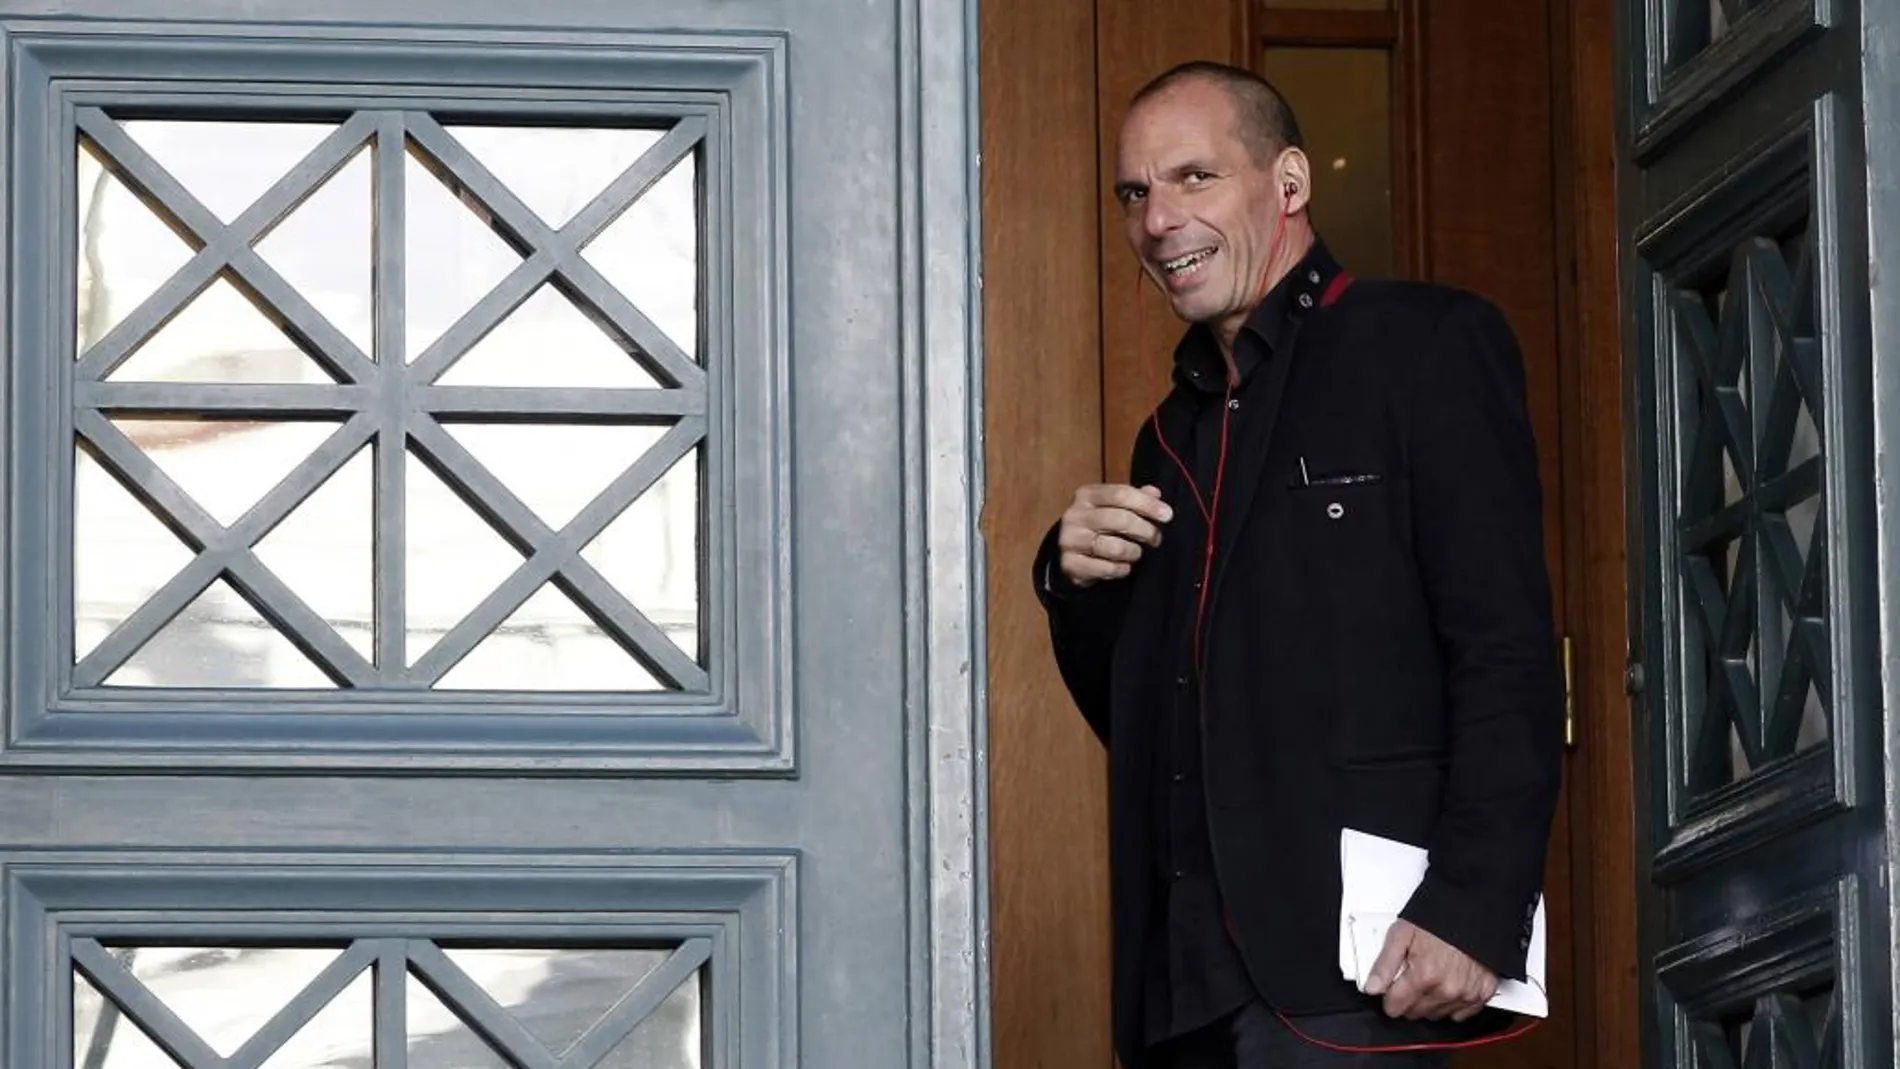 El ex ministro de finanzas griego Yanis Varoufakis